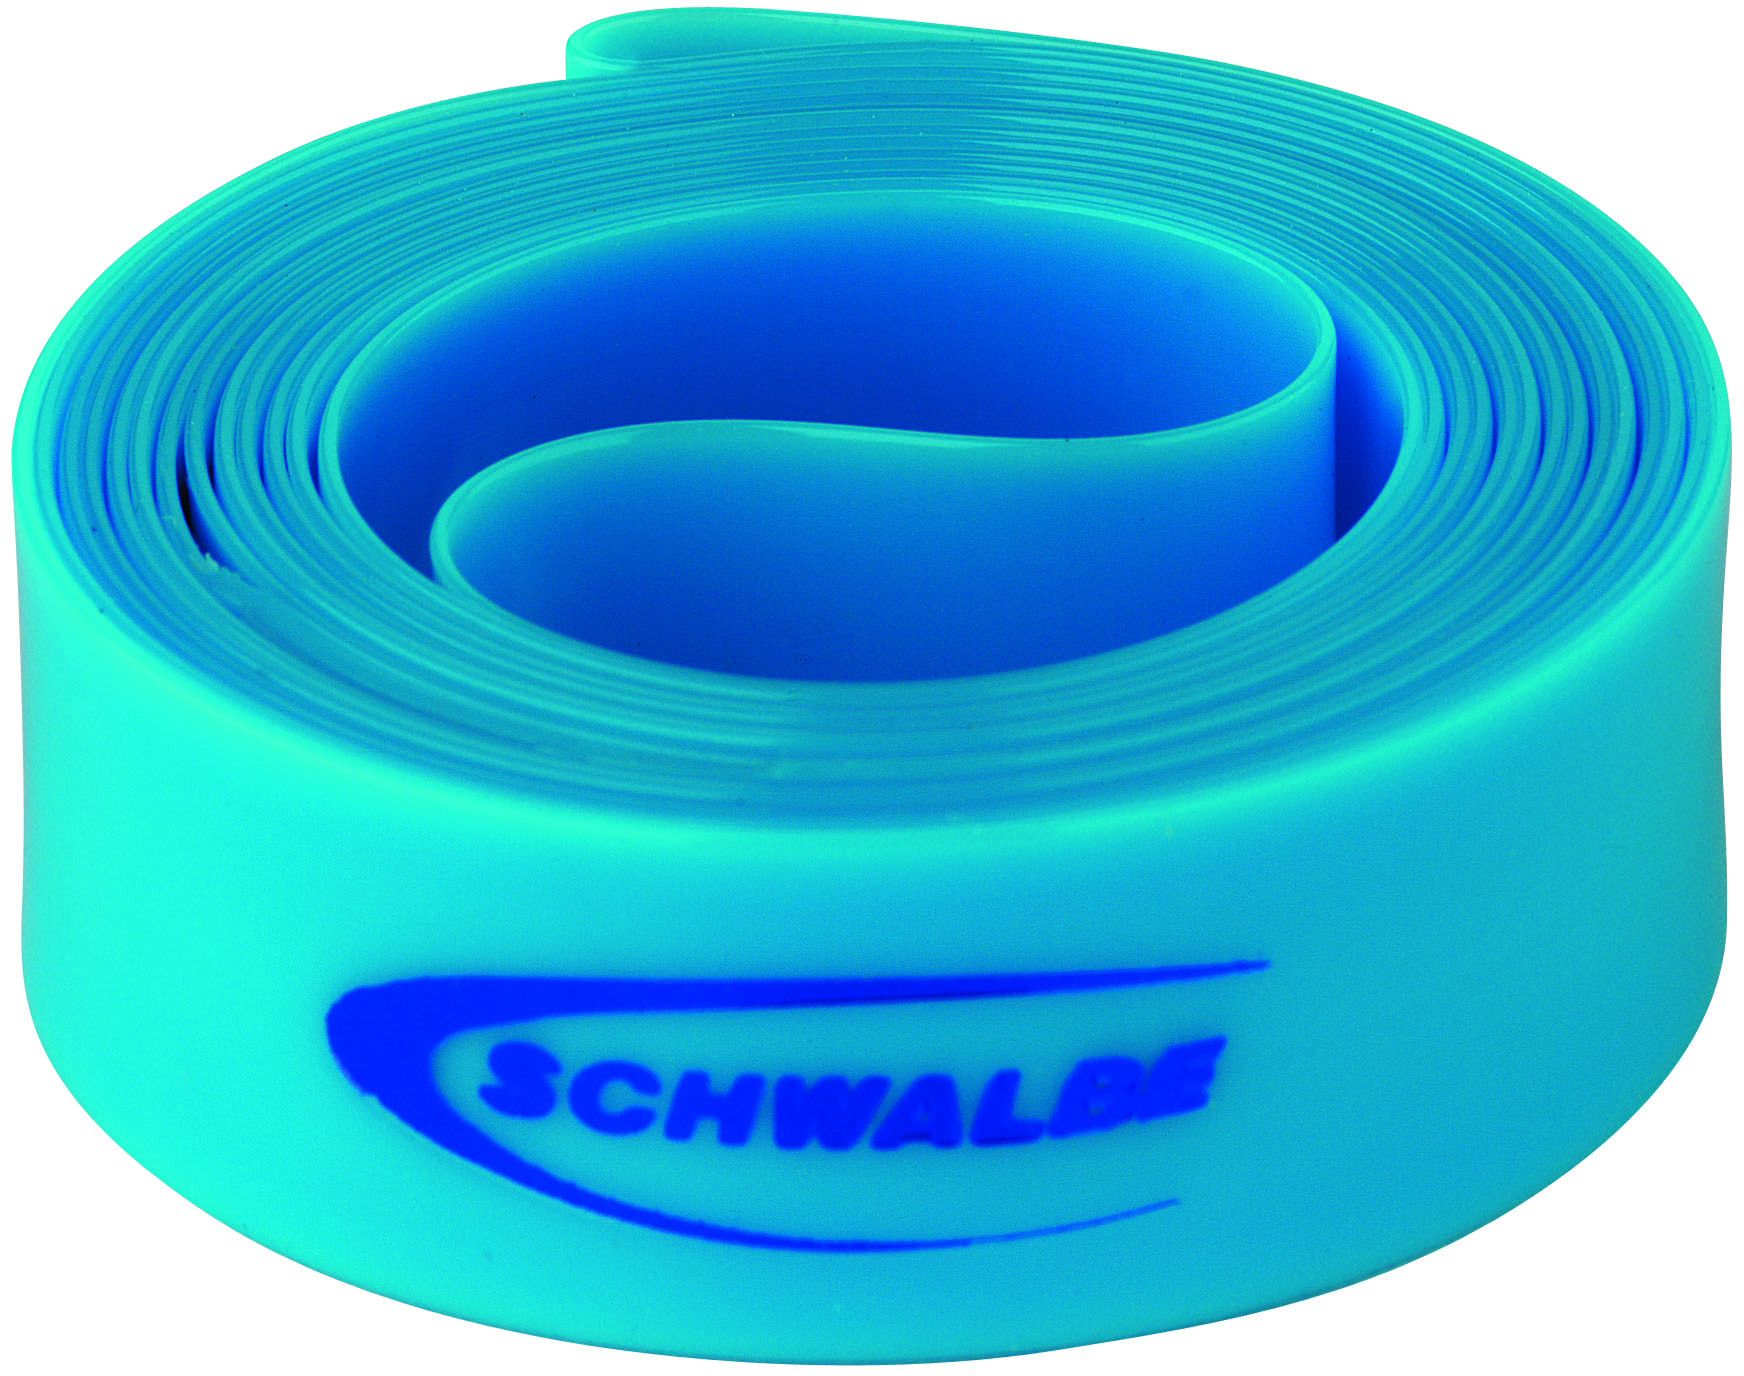 Schwalbe High Pressure Rim Tape 700C X 18mm